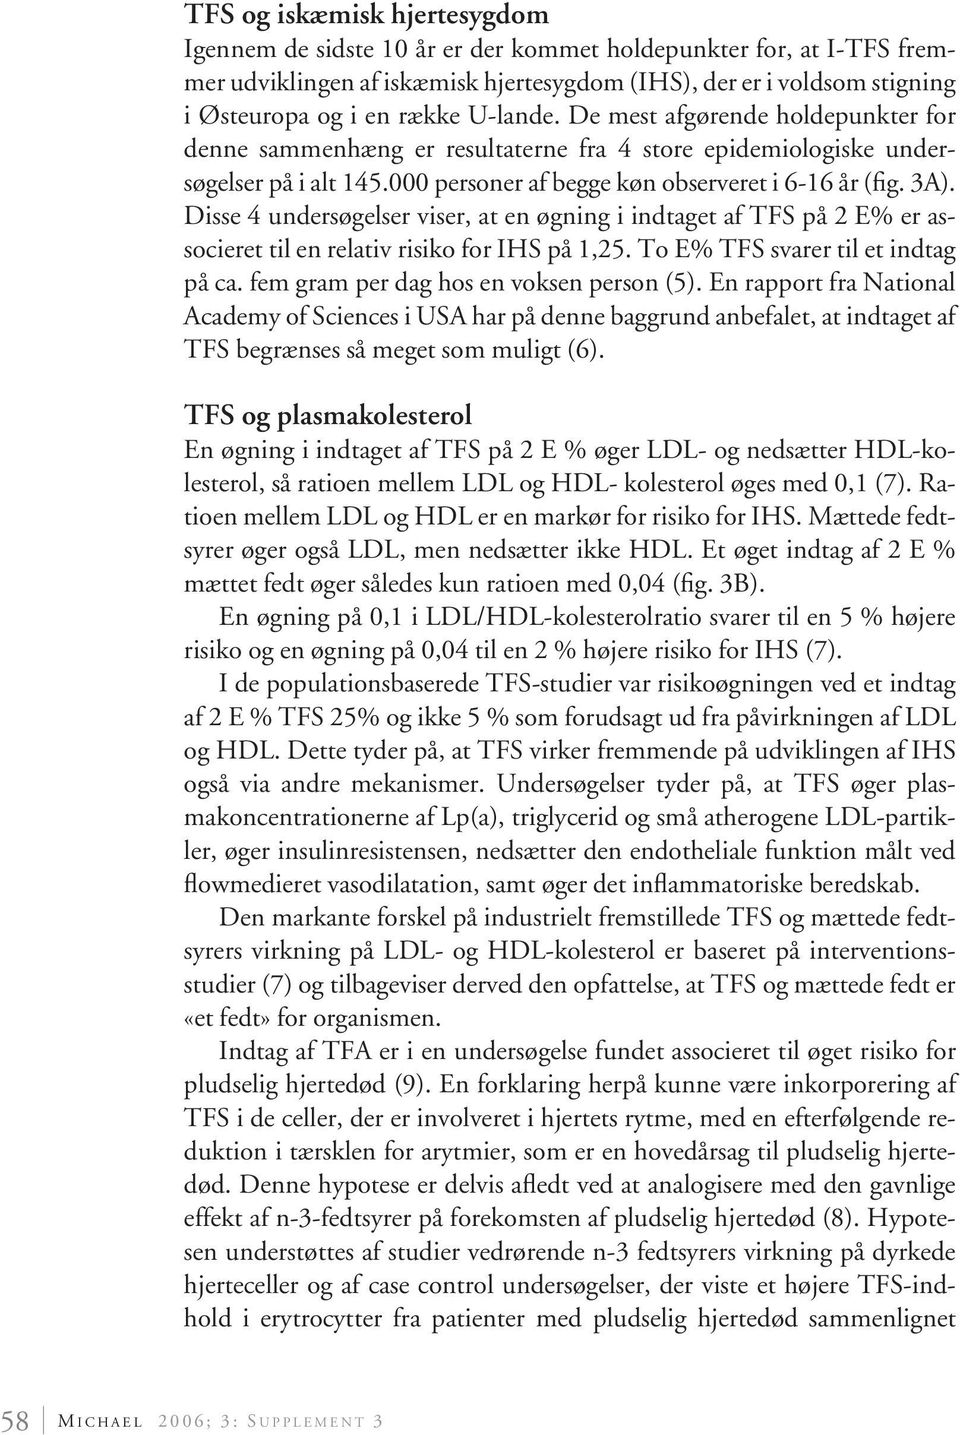 Disse 4 undersøgelser viser, at en øgning i indtaget af TFS på 2 E% er associeret til en relativ risiko for IHS på 1,25. To E% TFS svarer til et indtag på ca.